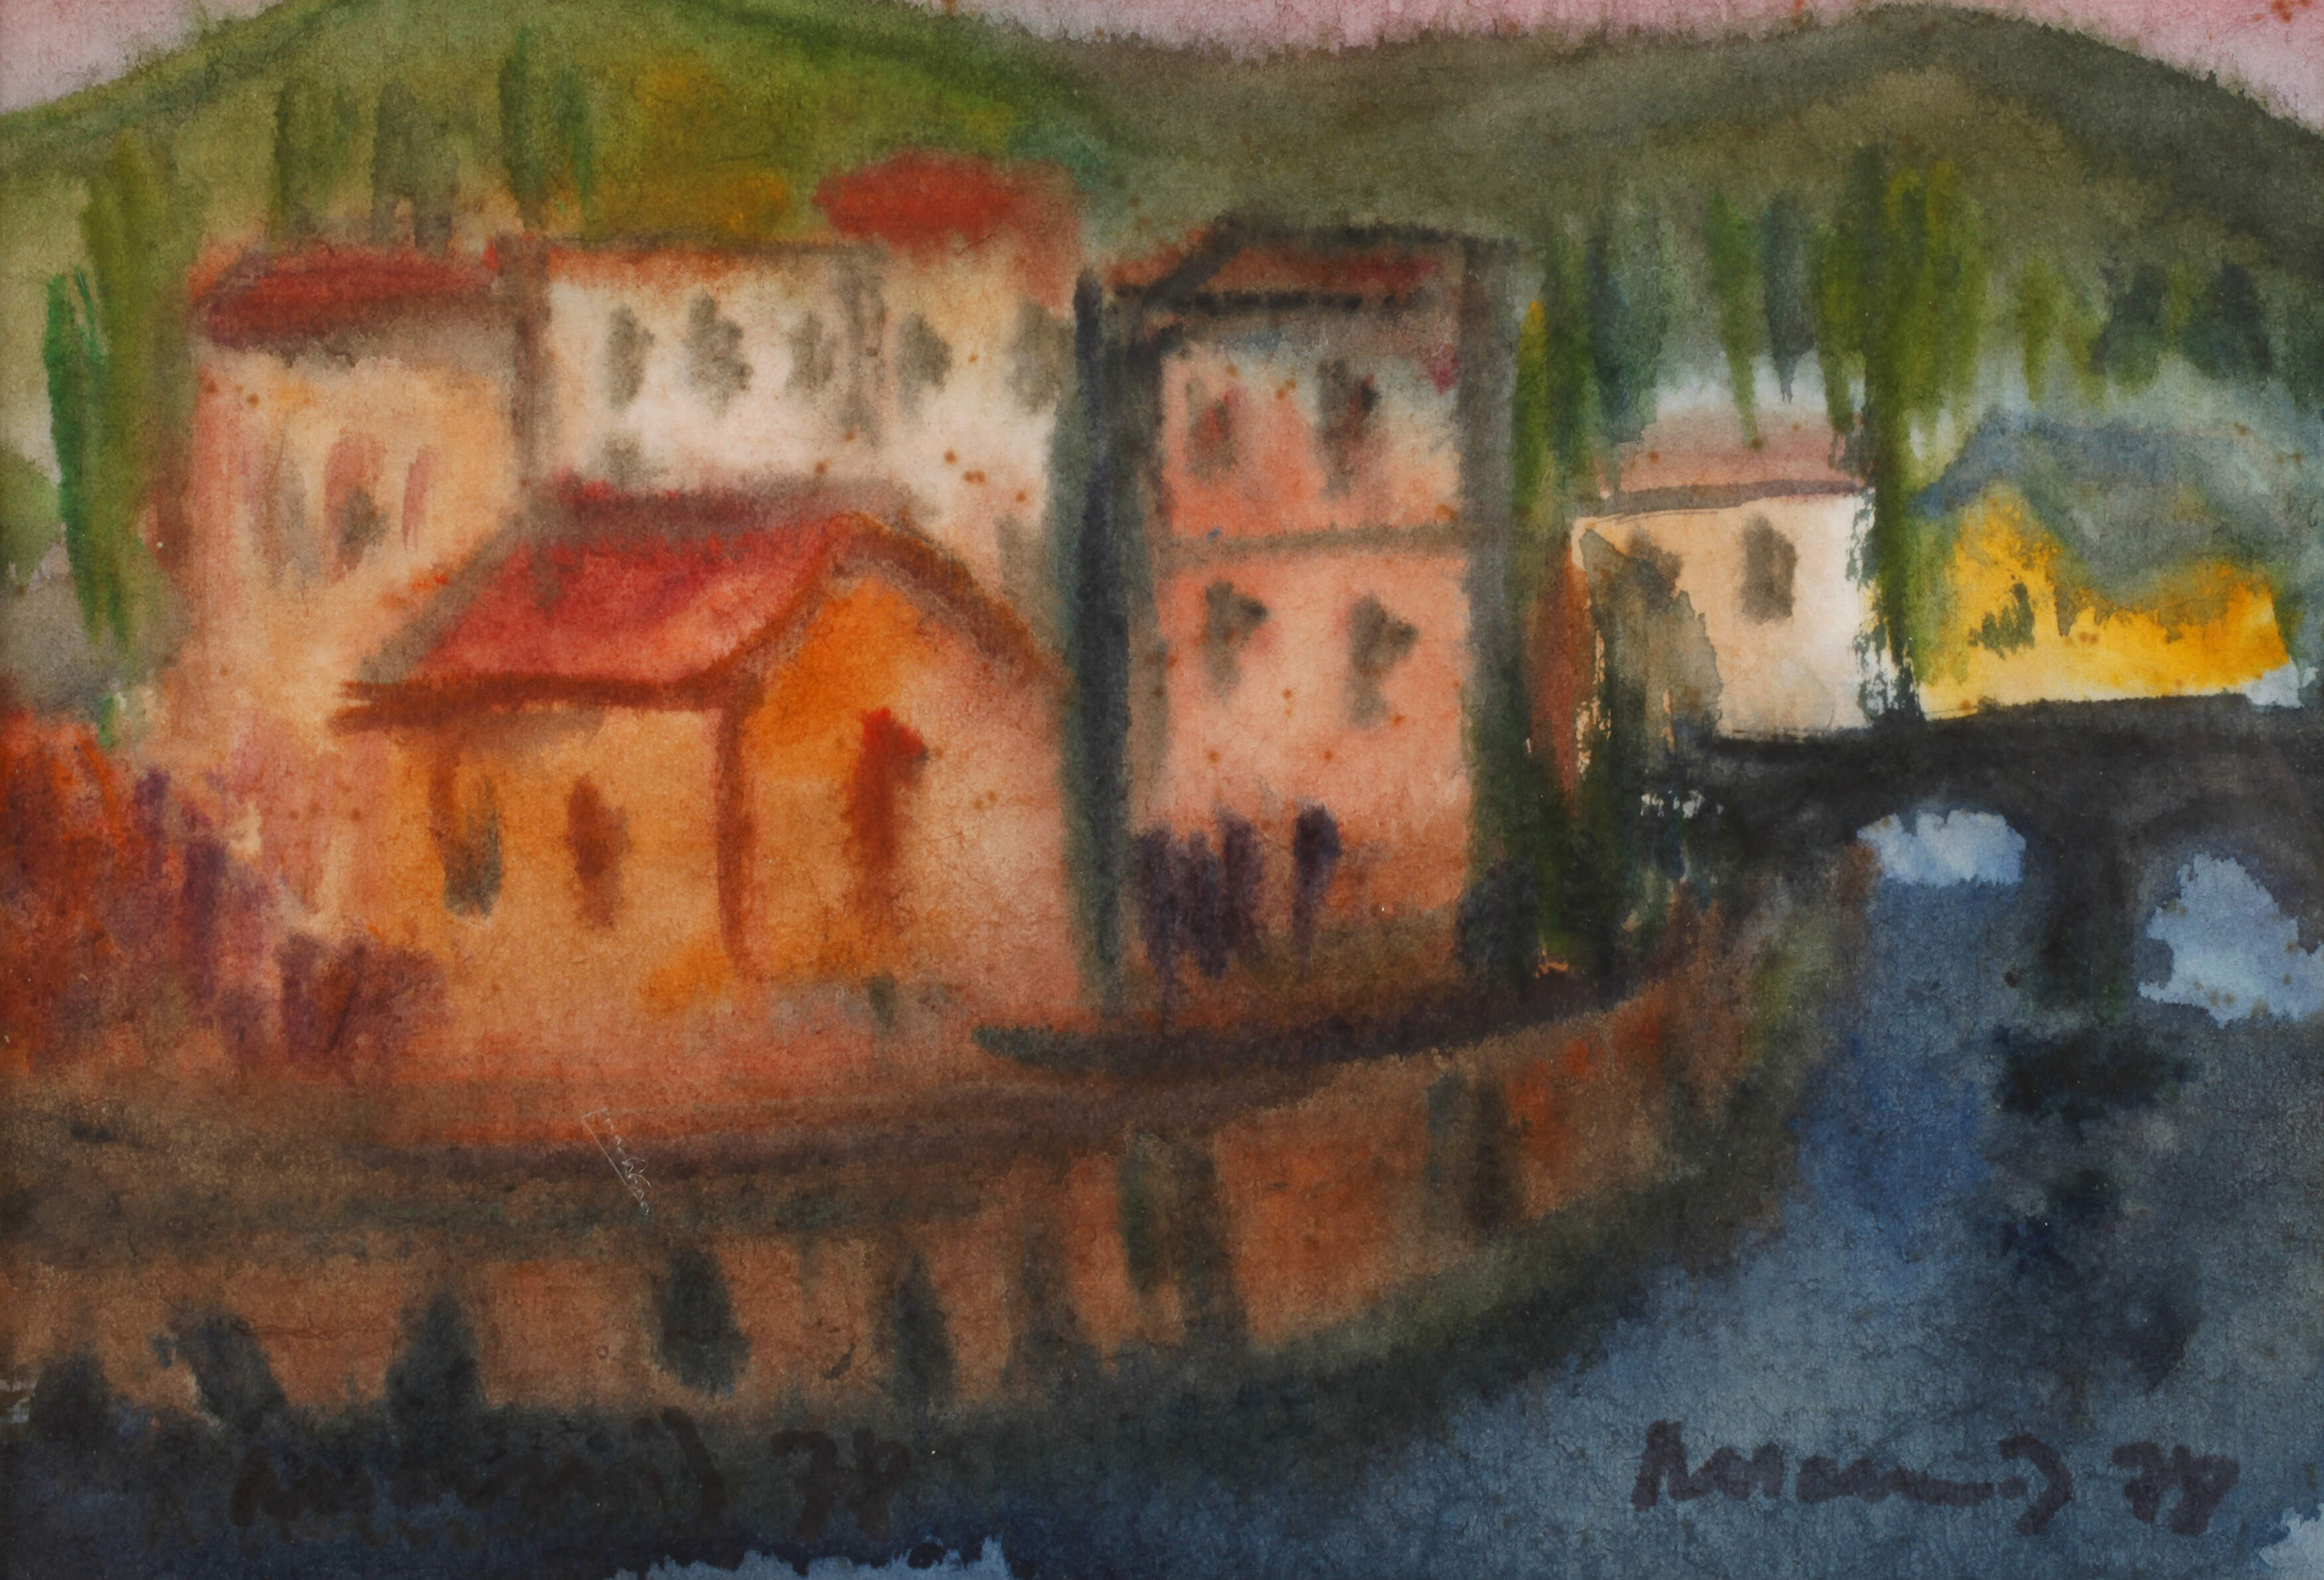 Albert Hennig, "Häuser am Fluss"